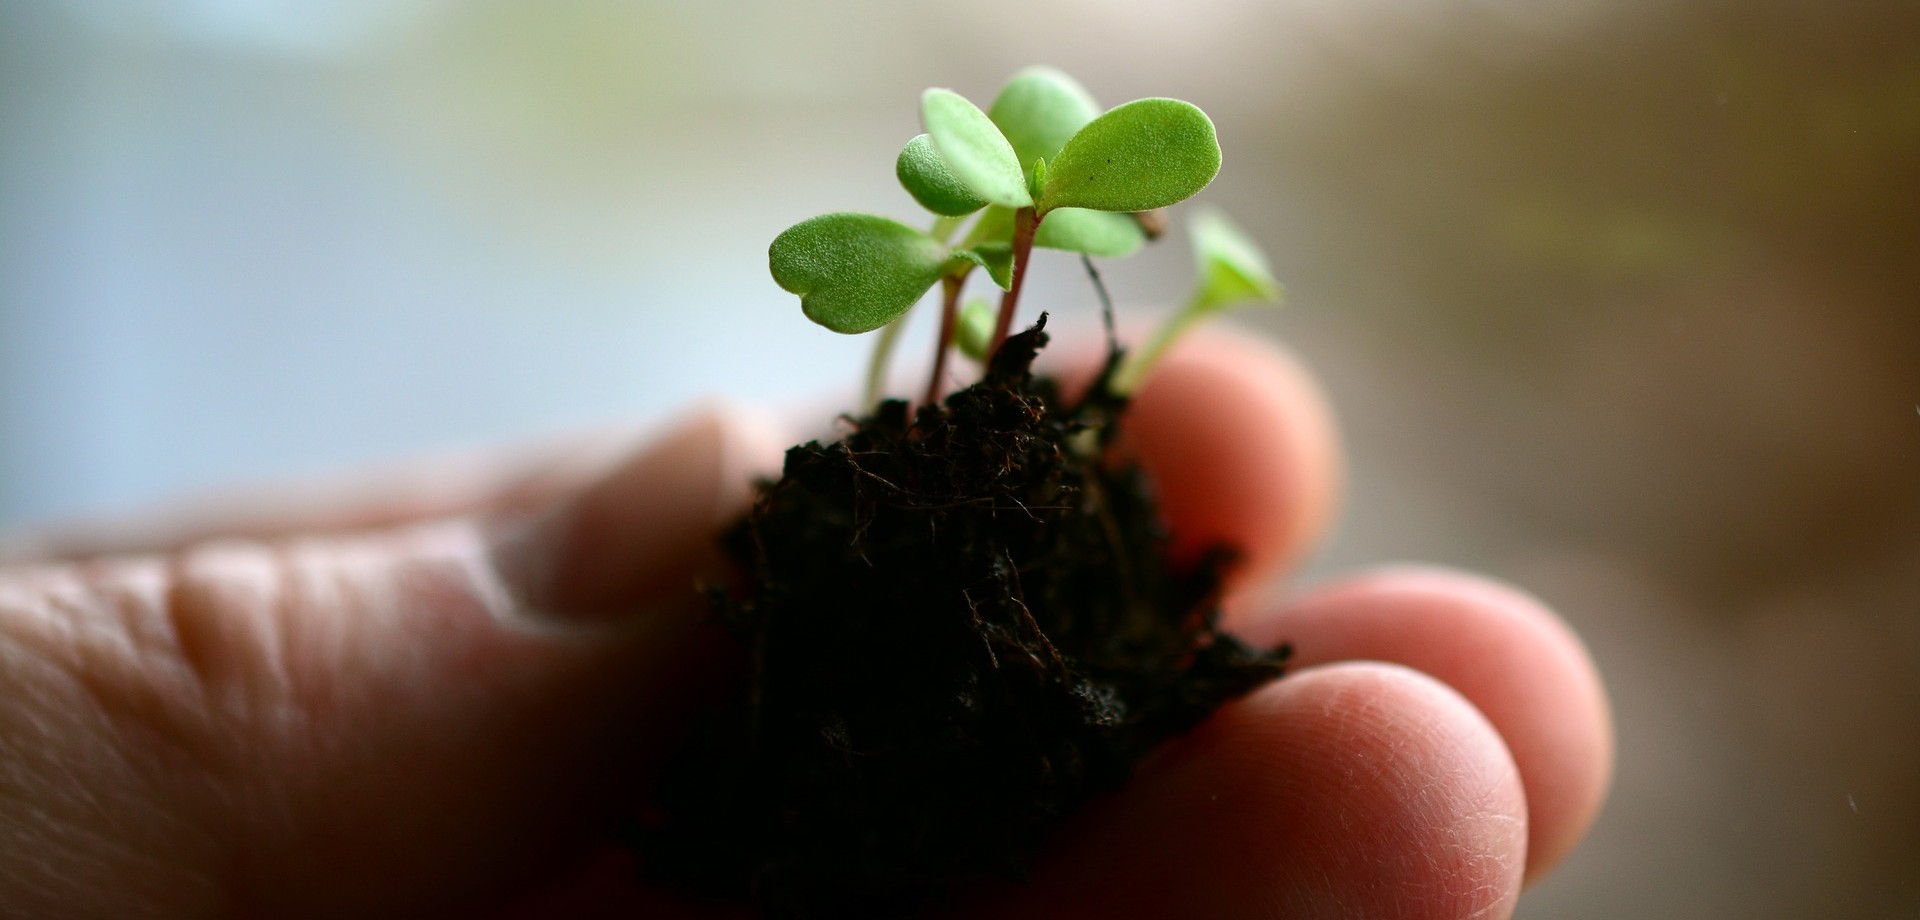 Eine Hand hält einen kleinen Erdklumpen aus dem eine kleine, junge Pflanze grün erblüht